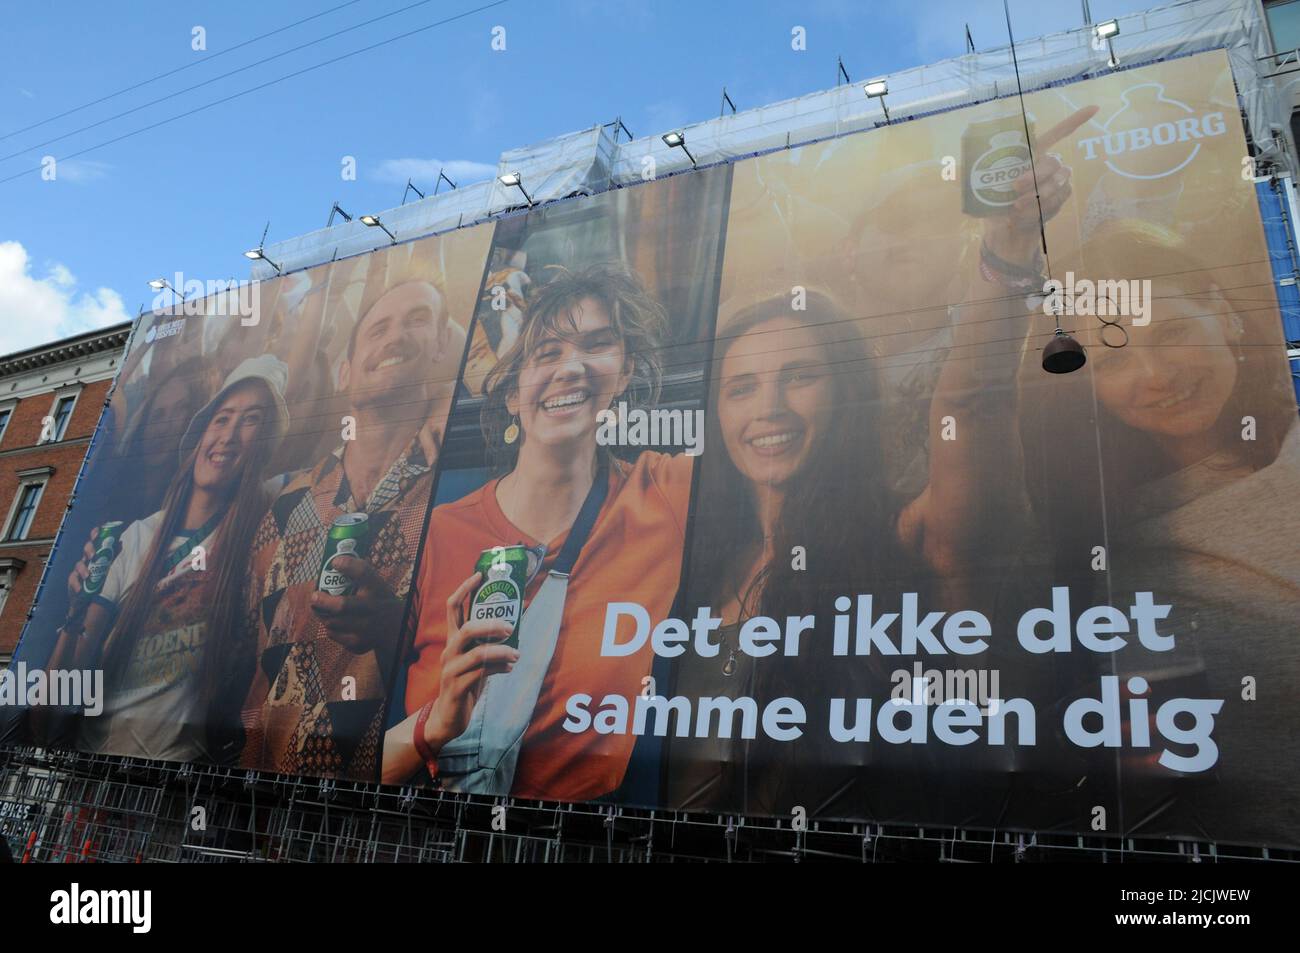 Copenhague /Danemark/13 juin 2022 /immense billbaord avec canette de bière Tuborg dnish dans la capitale danoise Copenhague Danemark (photo..Francis Joseph Dean/Deanimages). Banque D'Images